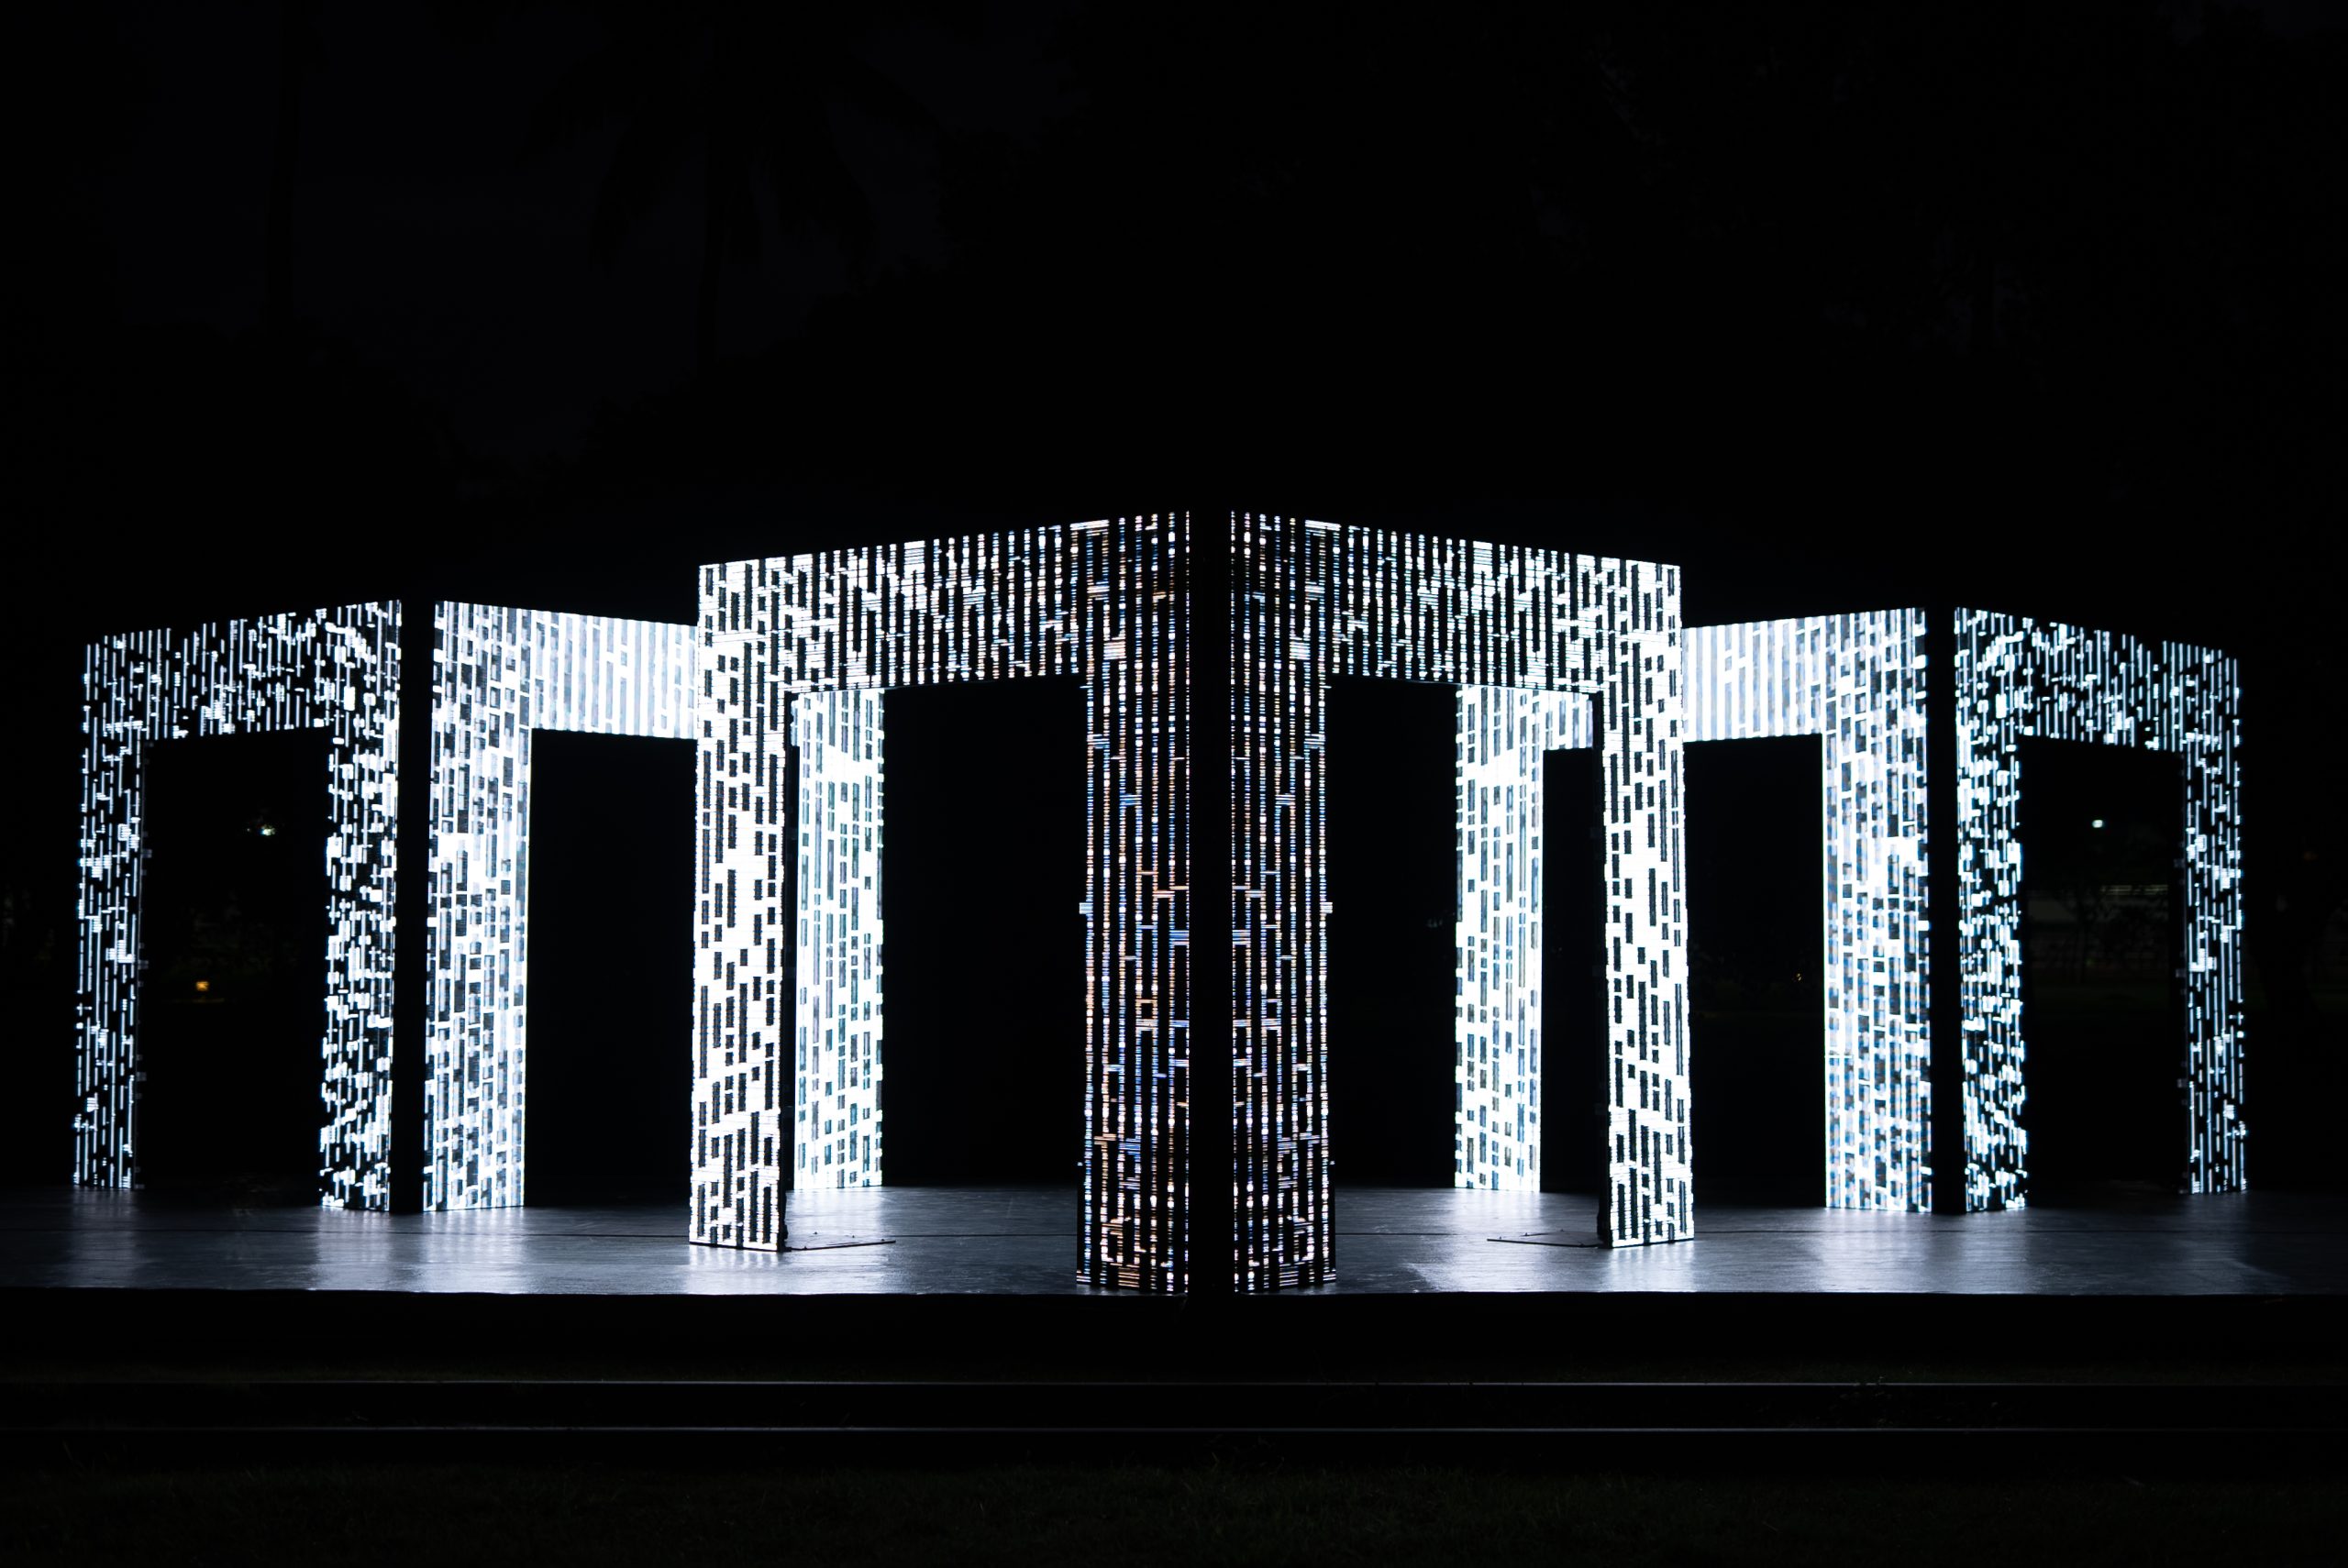 以技術創新聞名國際的澳洲聲光藝術家 Kit Webster，首次來台就為台東帶來他的作品〈原生〉。鑲嵌三座拱⾨裝置上面的70萬顆LED燈形成的光矩陣，創造出無限造型、色彩及視覺錯視的虛擬空間；連續十多分鐘的動態作品，使真實與虛幻在音樂節奏中不斷交錯，嶄新的形式為民眾帶來全新的體驗與藝術能量。